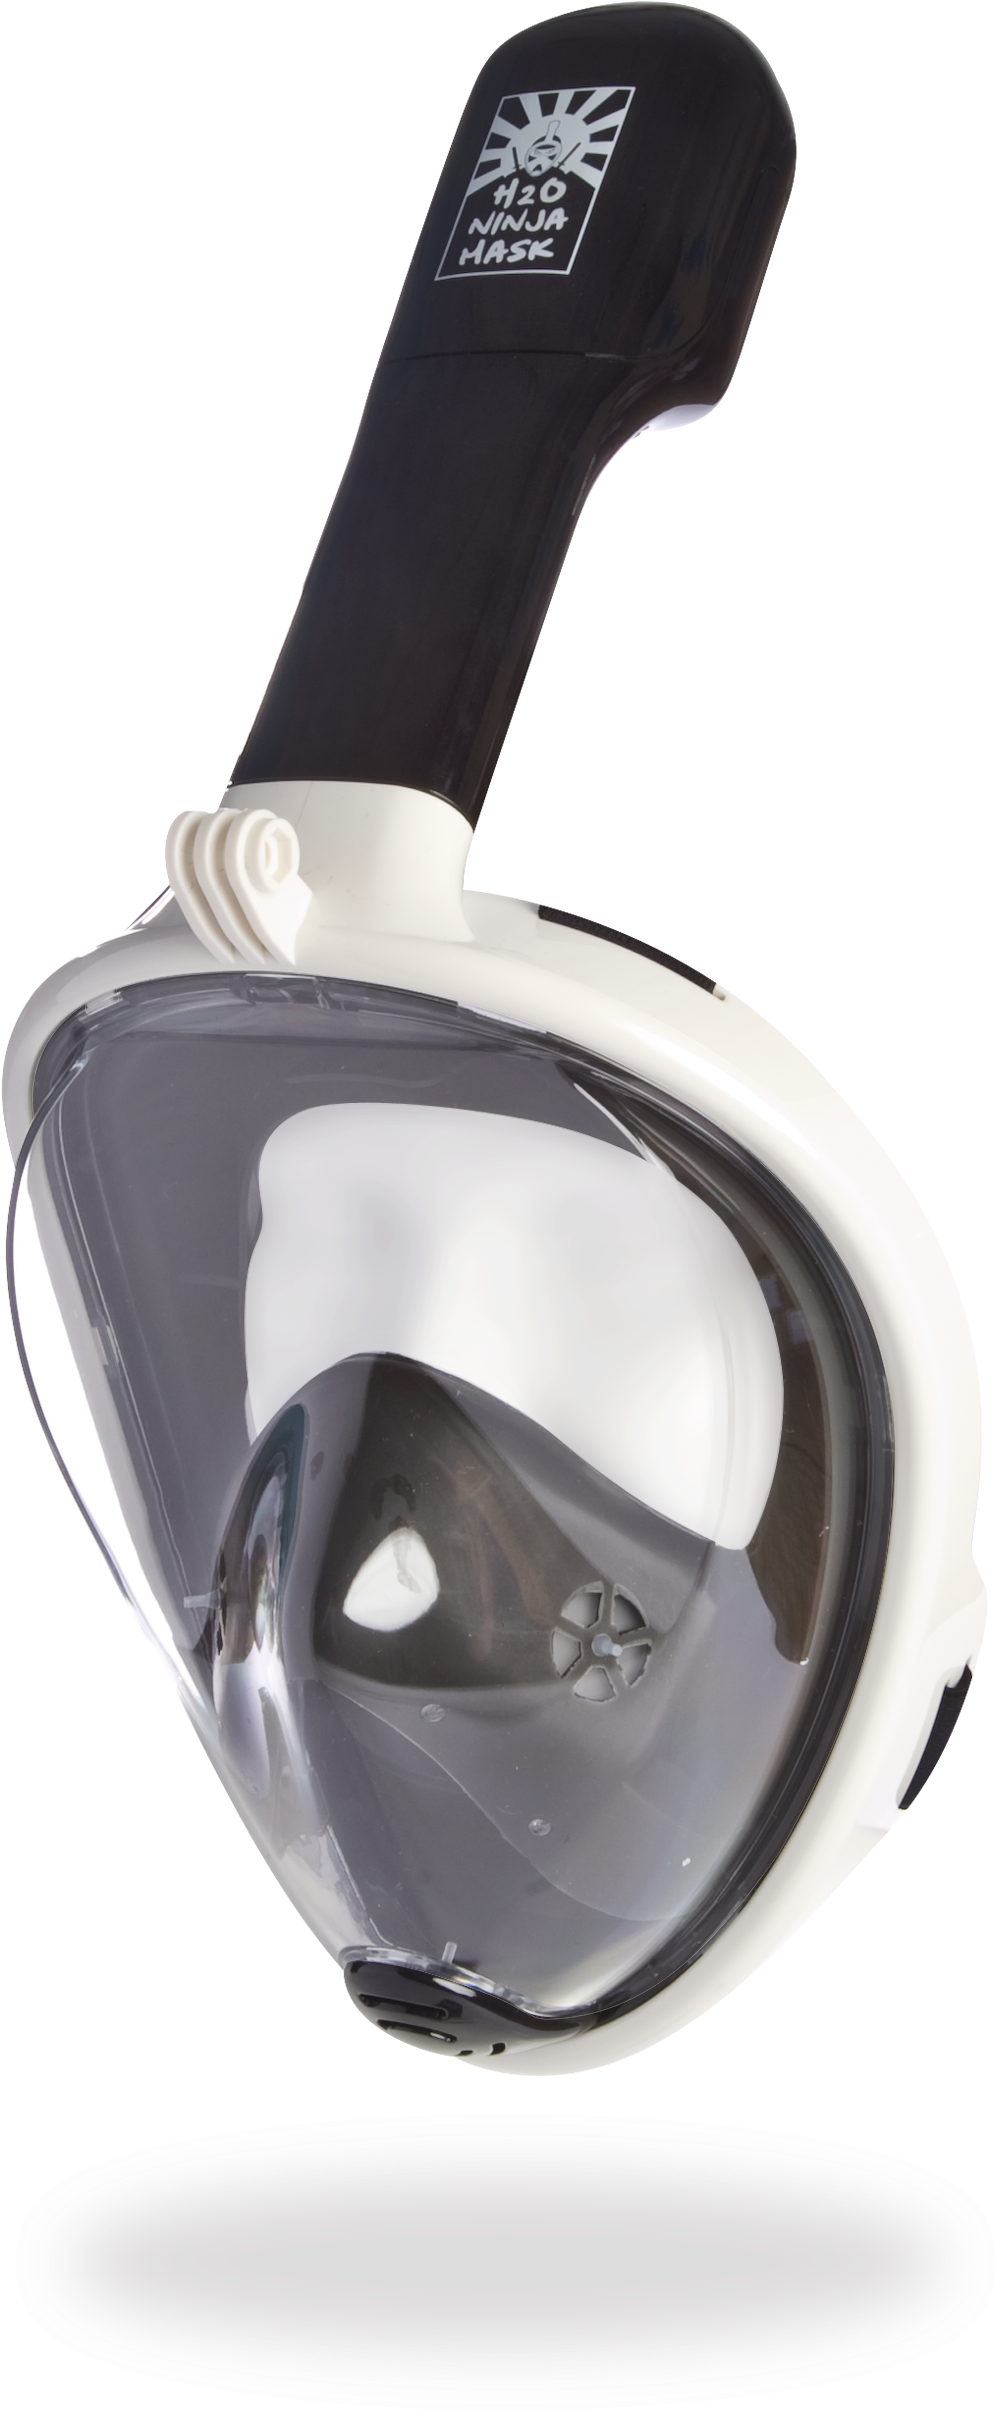 H20 Ninja Mask Full Face Snorkeling Mask - Diving Mask (1142x2580), Png Download